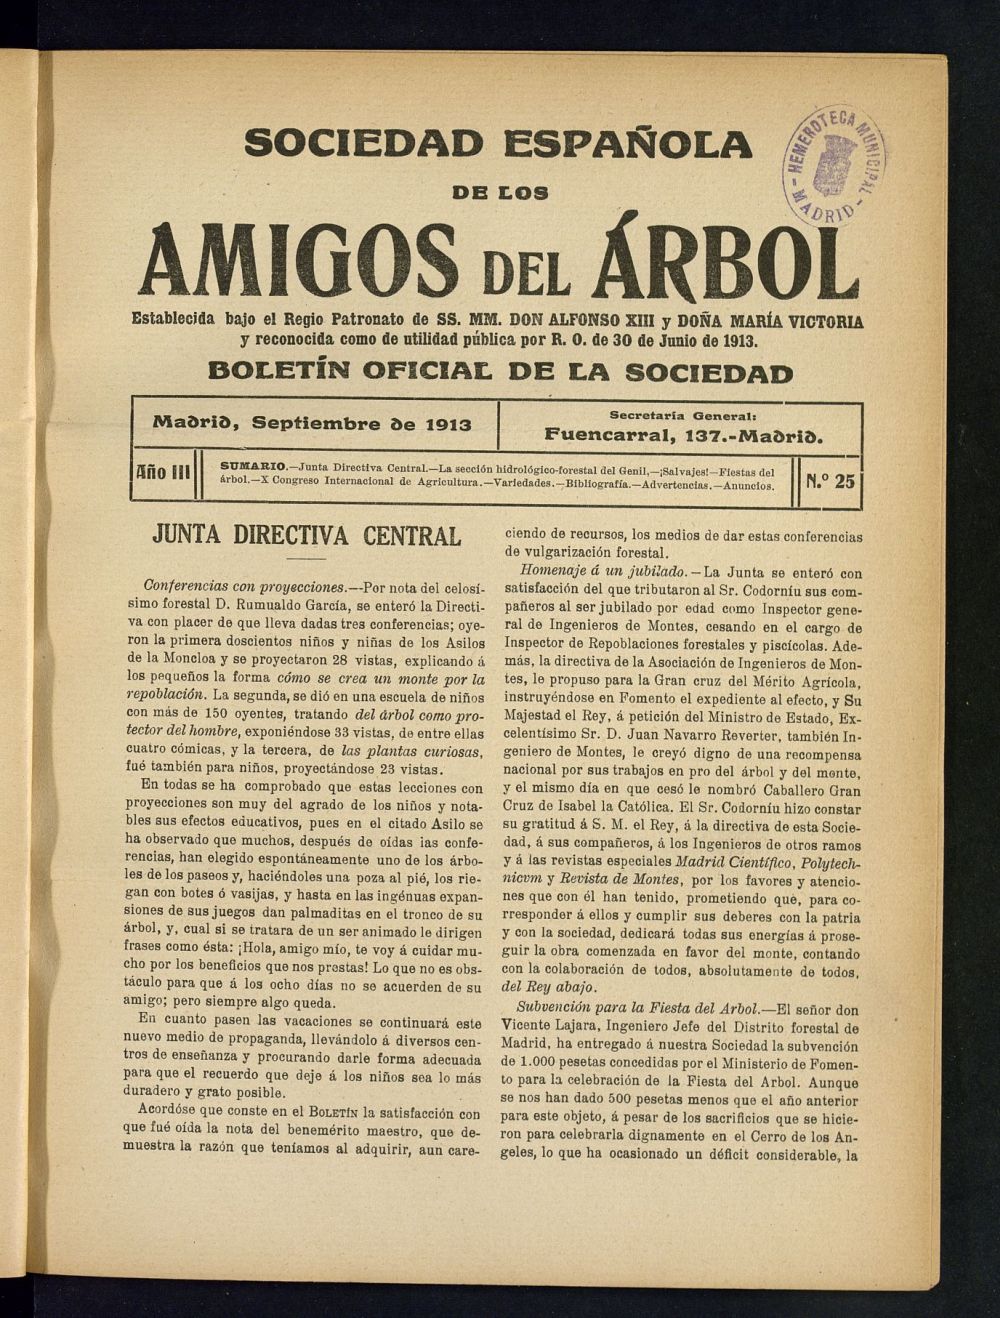 Boletn Comisin organizadora de la Sociedad Espaola de los amigos del rbol de septiembre de 1913